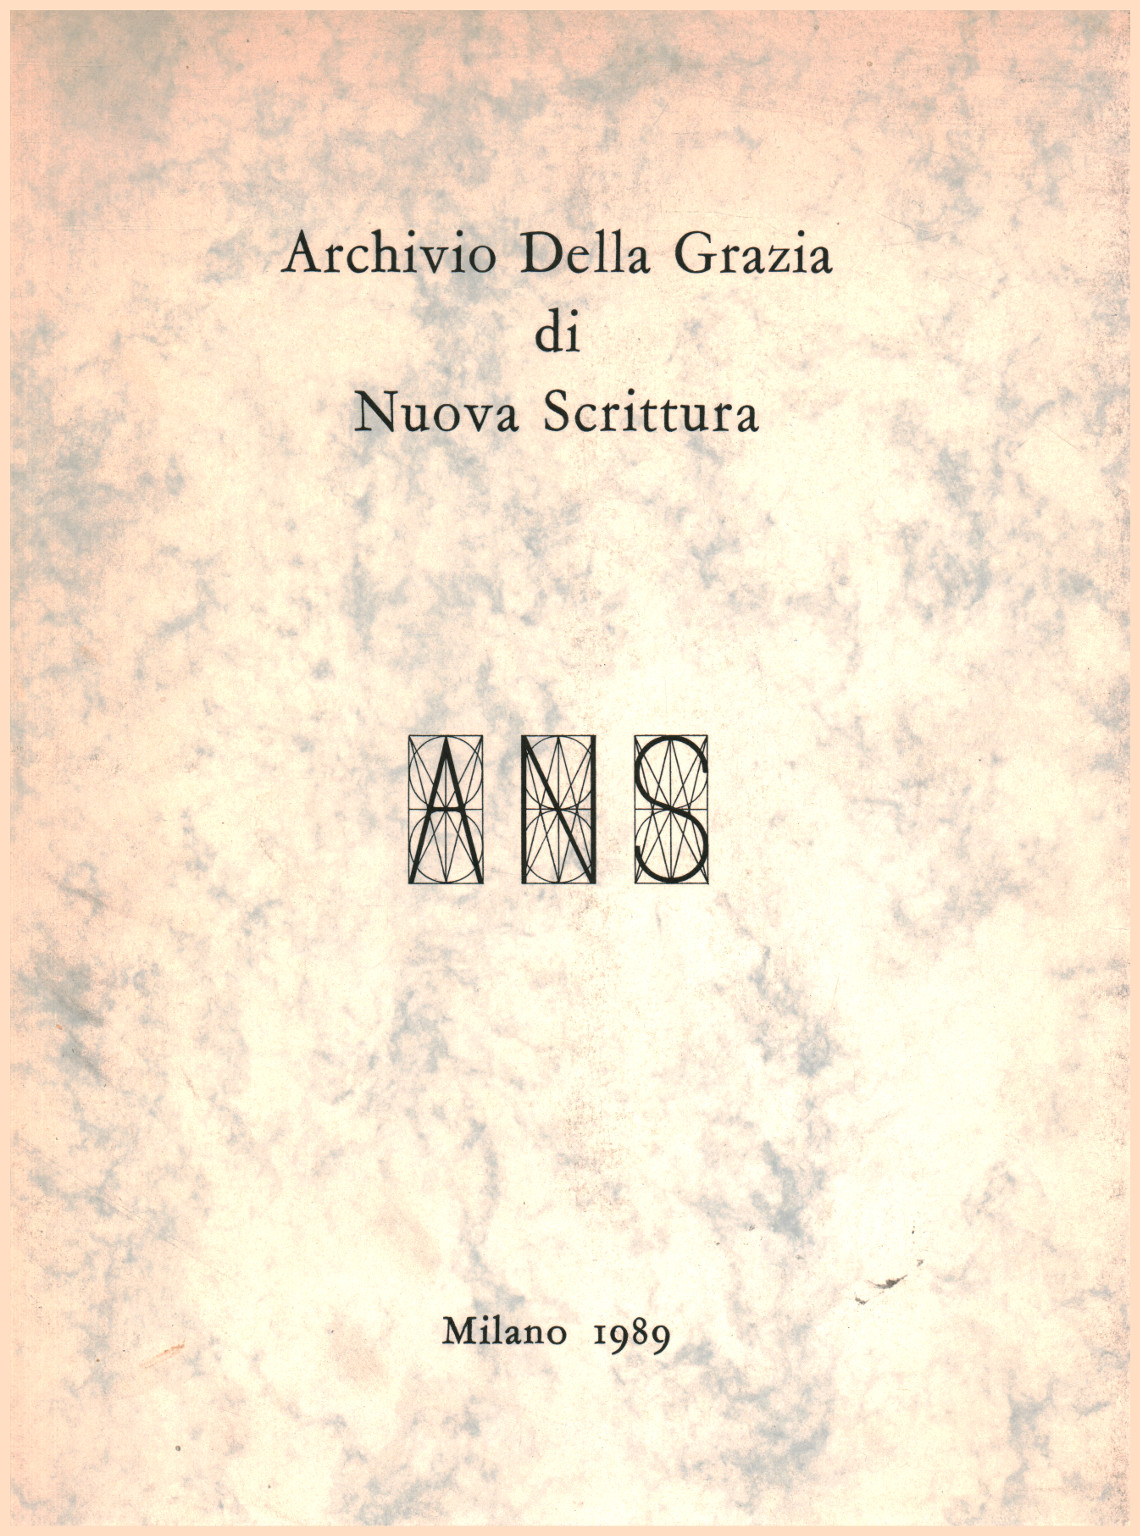 Archivio della grazia di nuova scrittura, s.a.